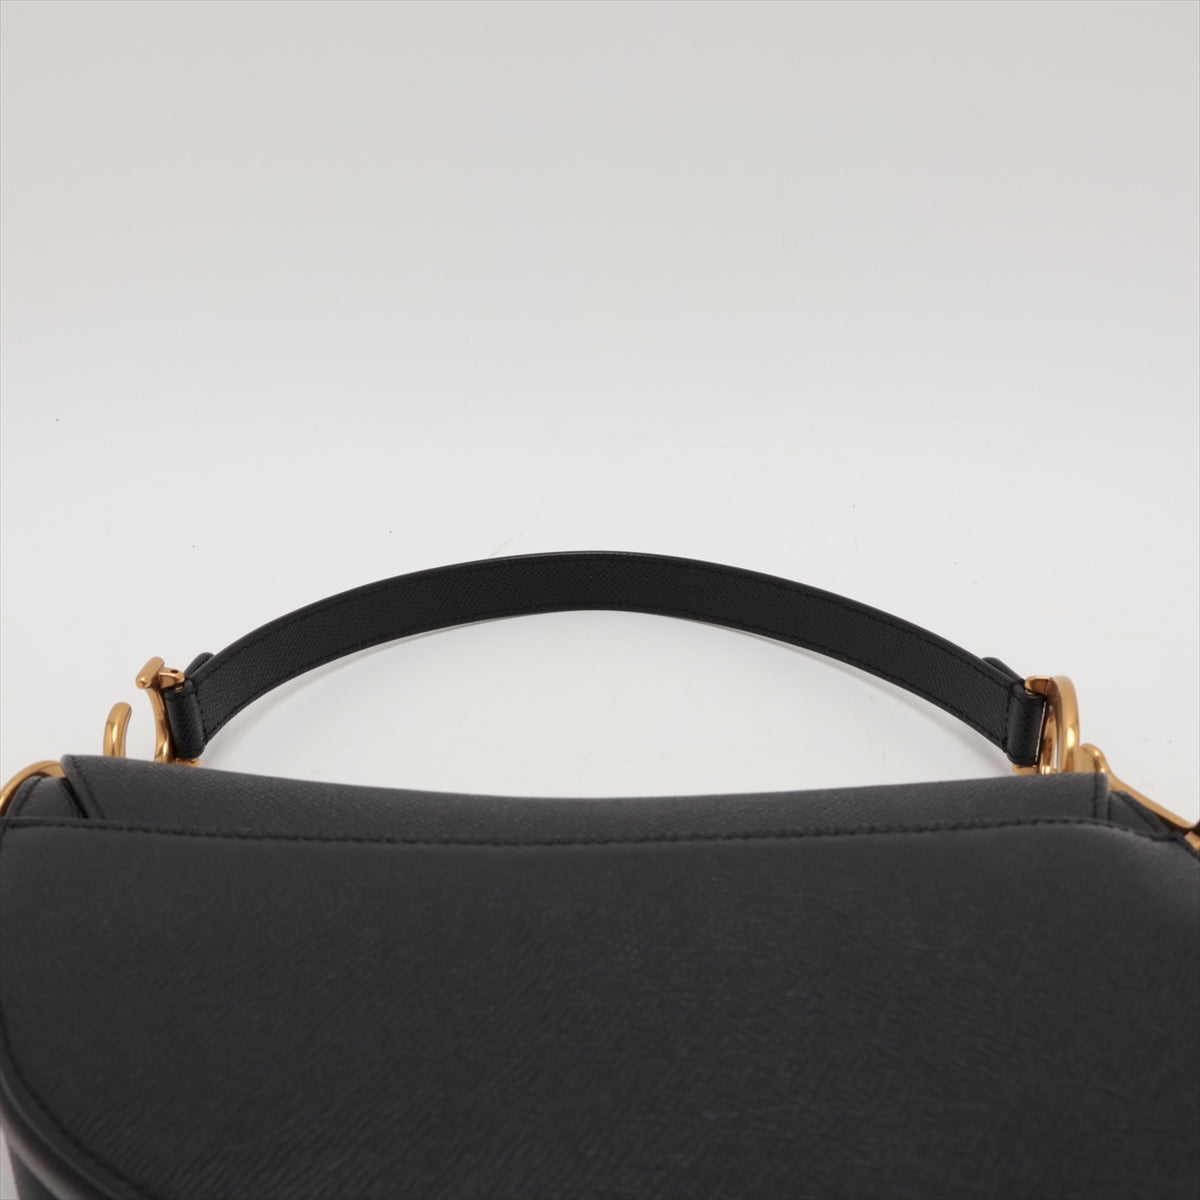 Christian Dior Saddle Bag Leather Shoulder Bag Black